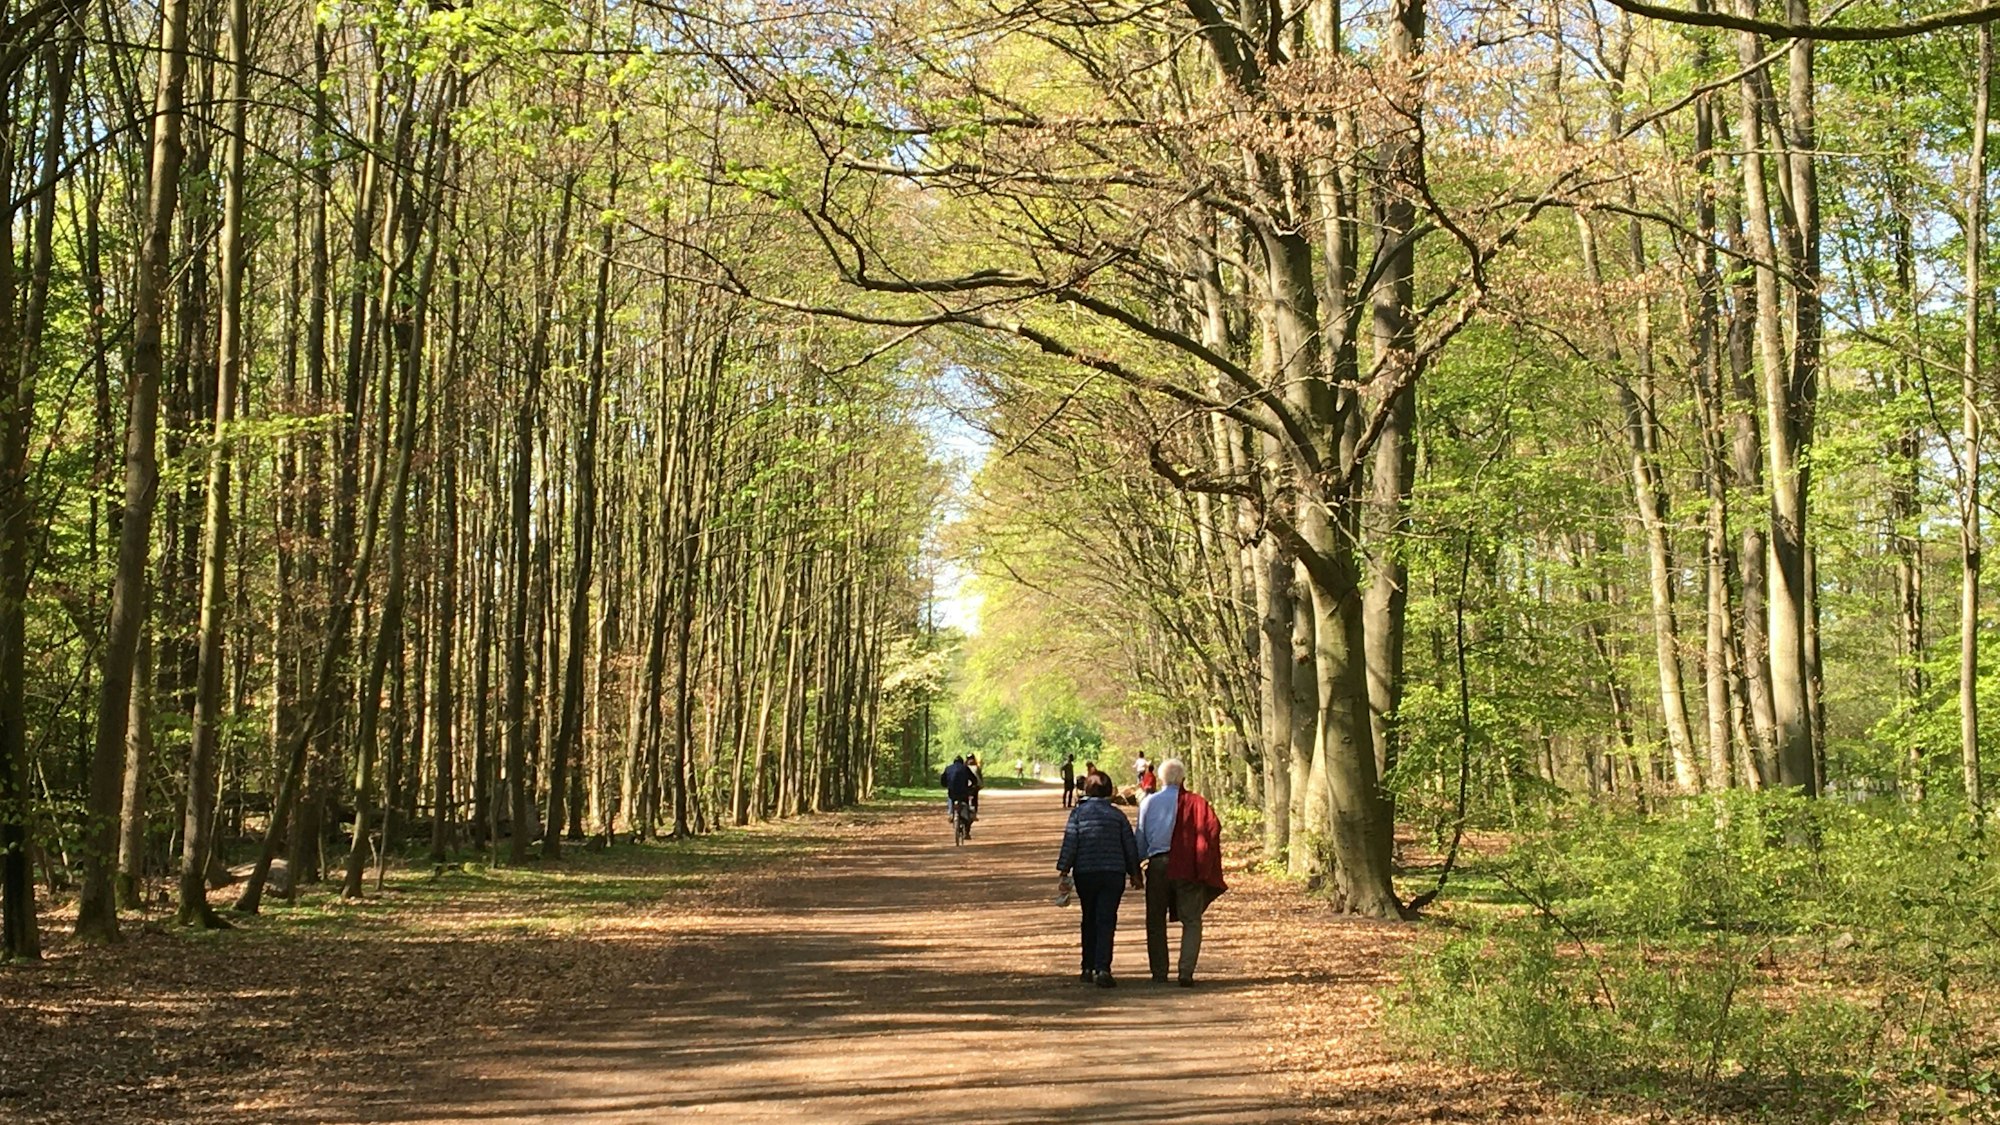 Spaziergänger in einem Wald